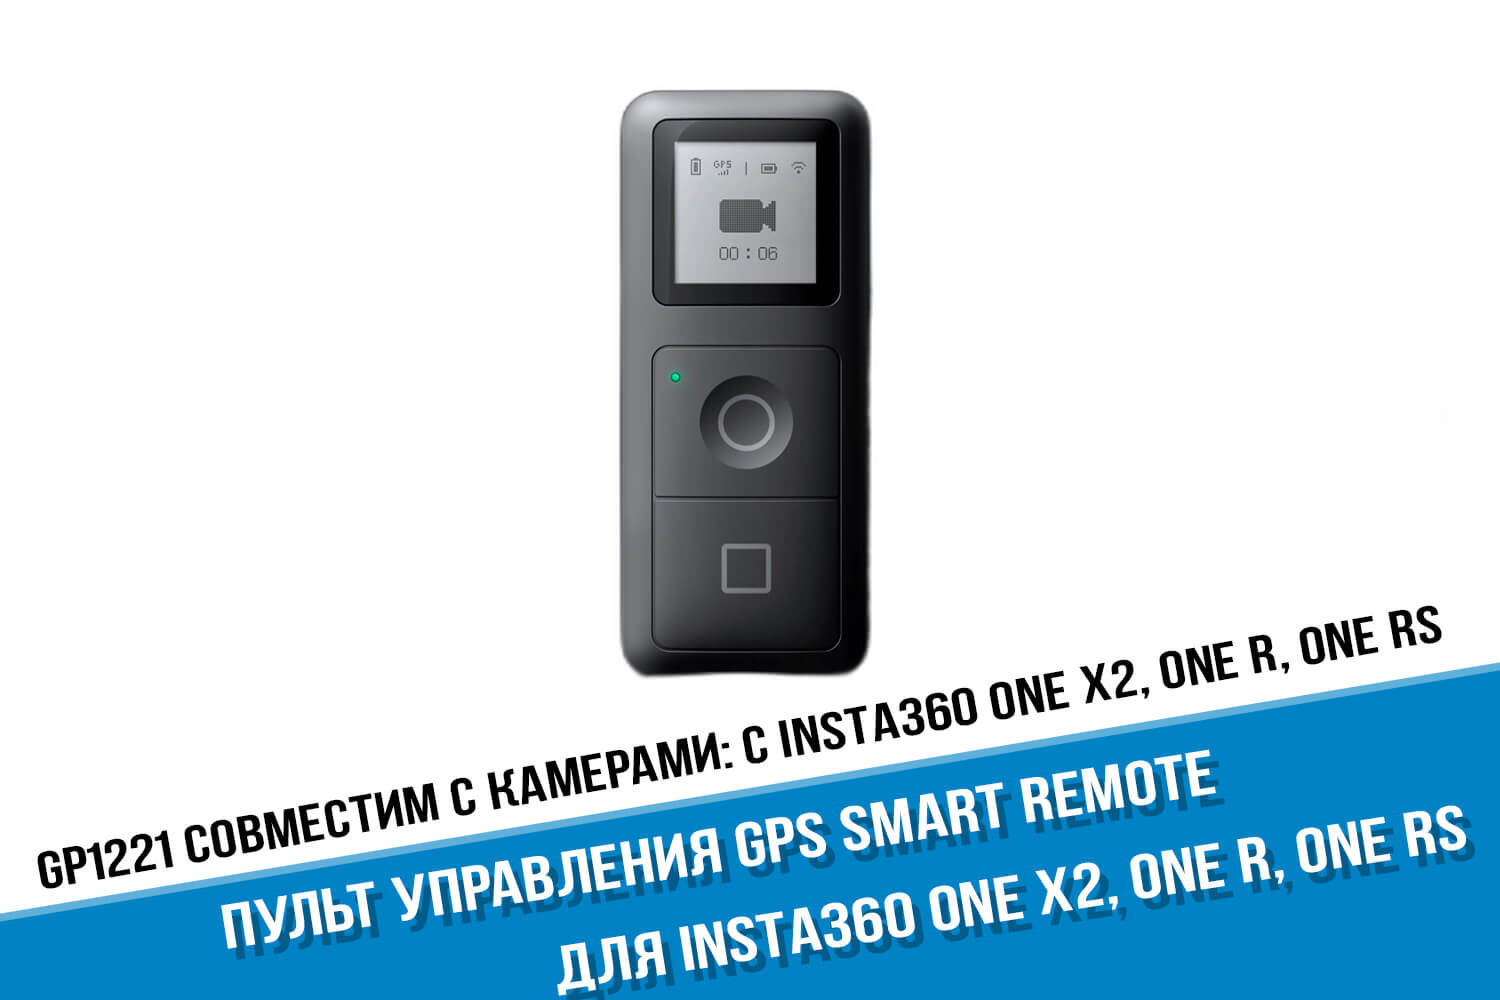 Пульт Insta360 GPS Smart Remote оригинал One X2, R купить в Москве или с  доставкой по России!